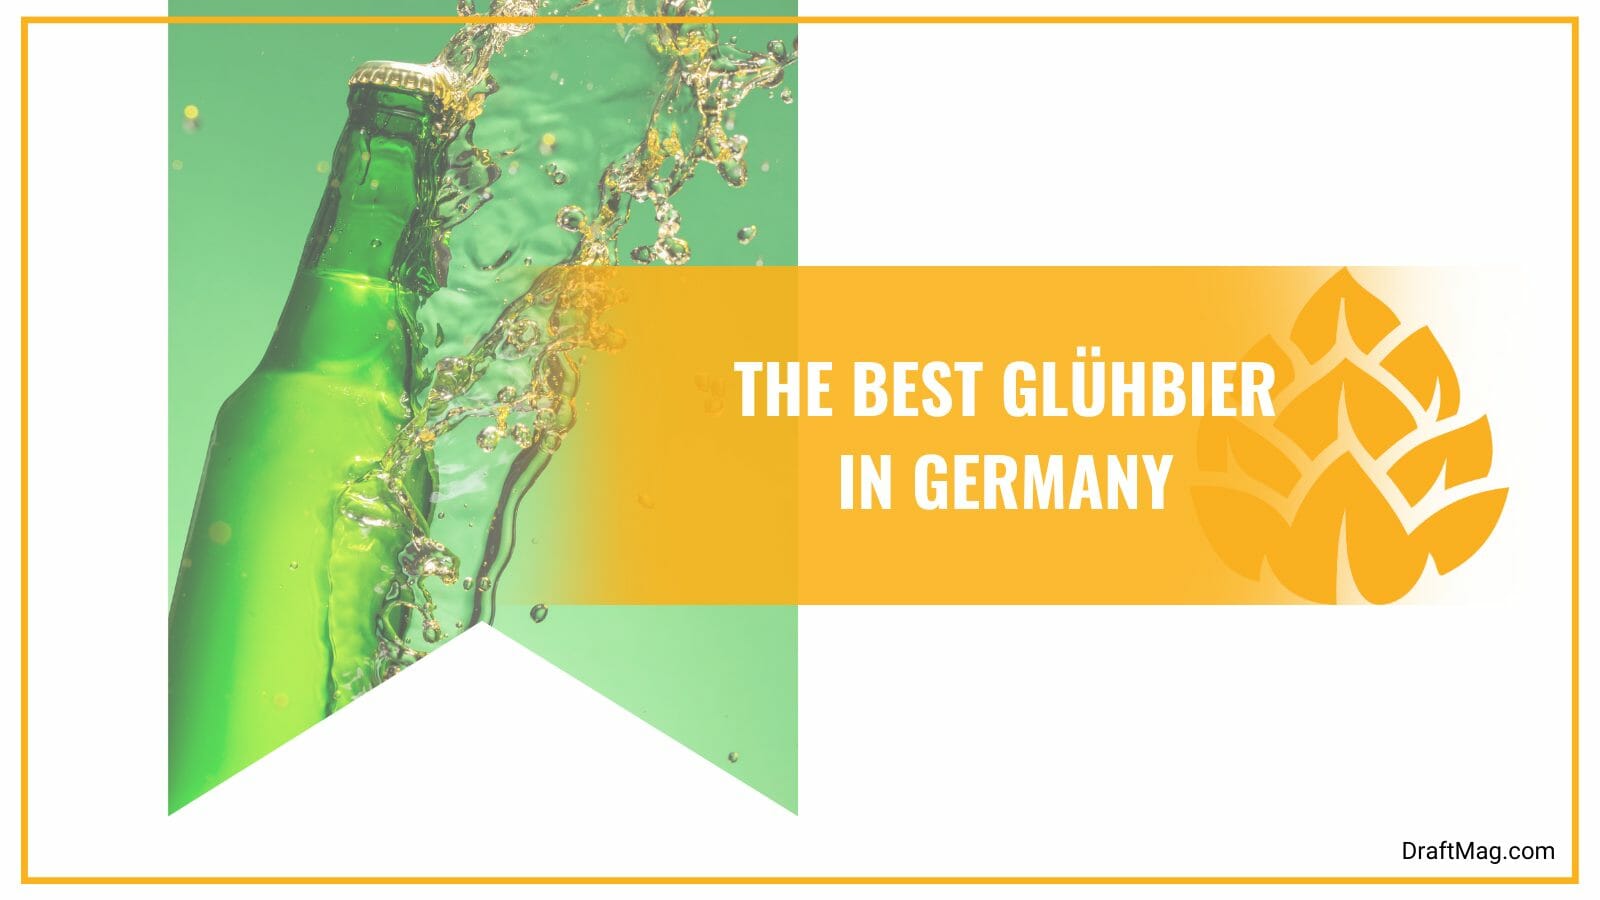 The best gluhbier in germany